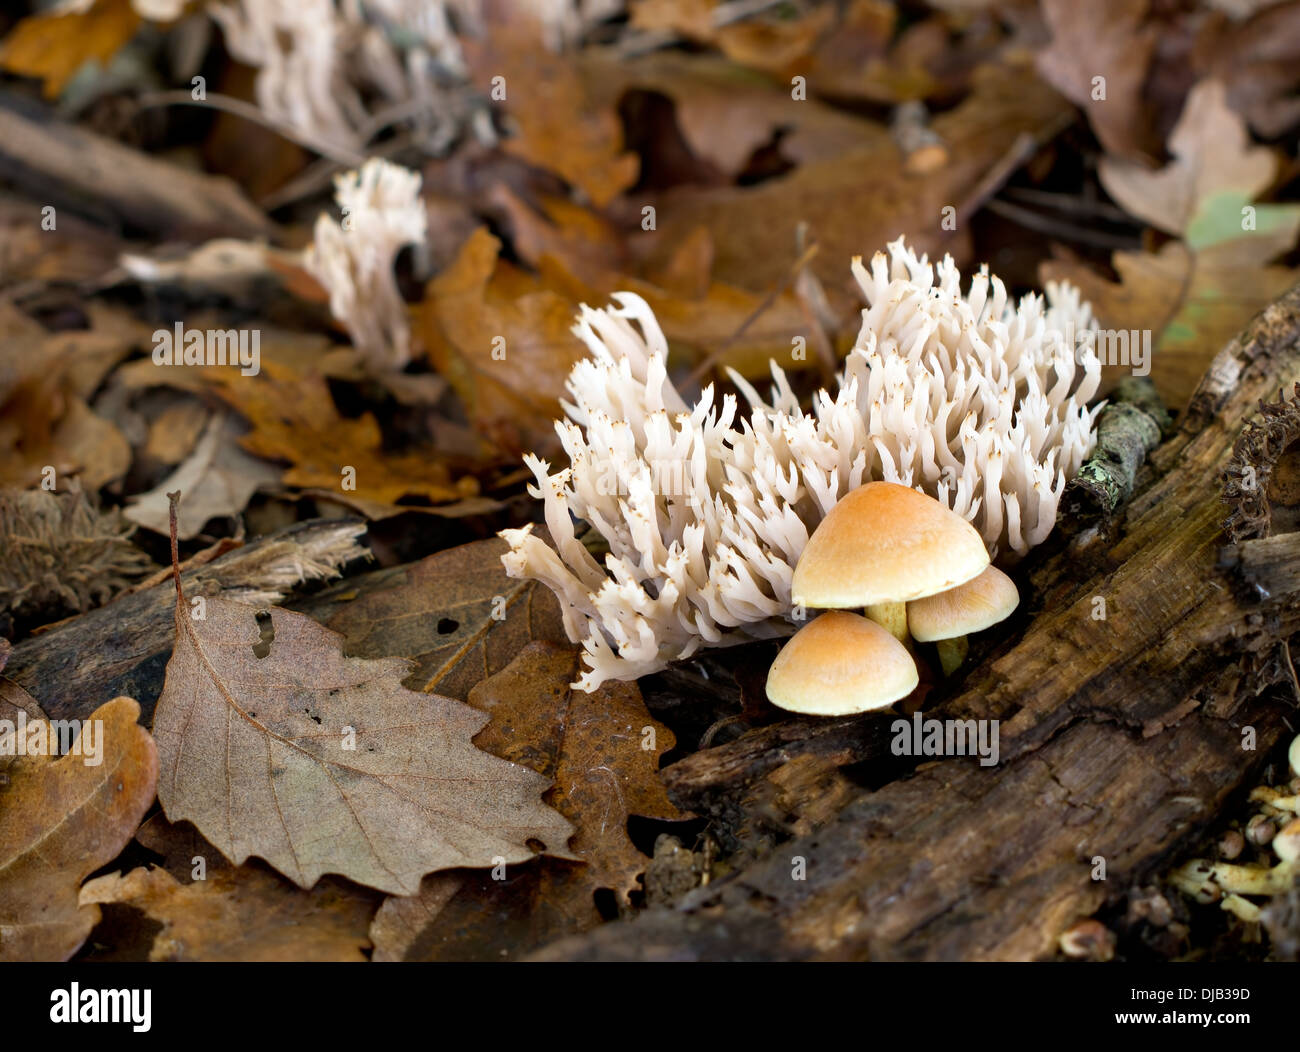 Clavulina coralloides aka Clavulina cristata. Corallo bianco crestato aka coral fungo. Foto Stock